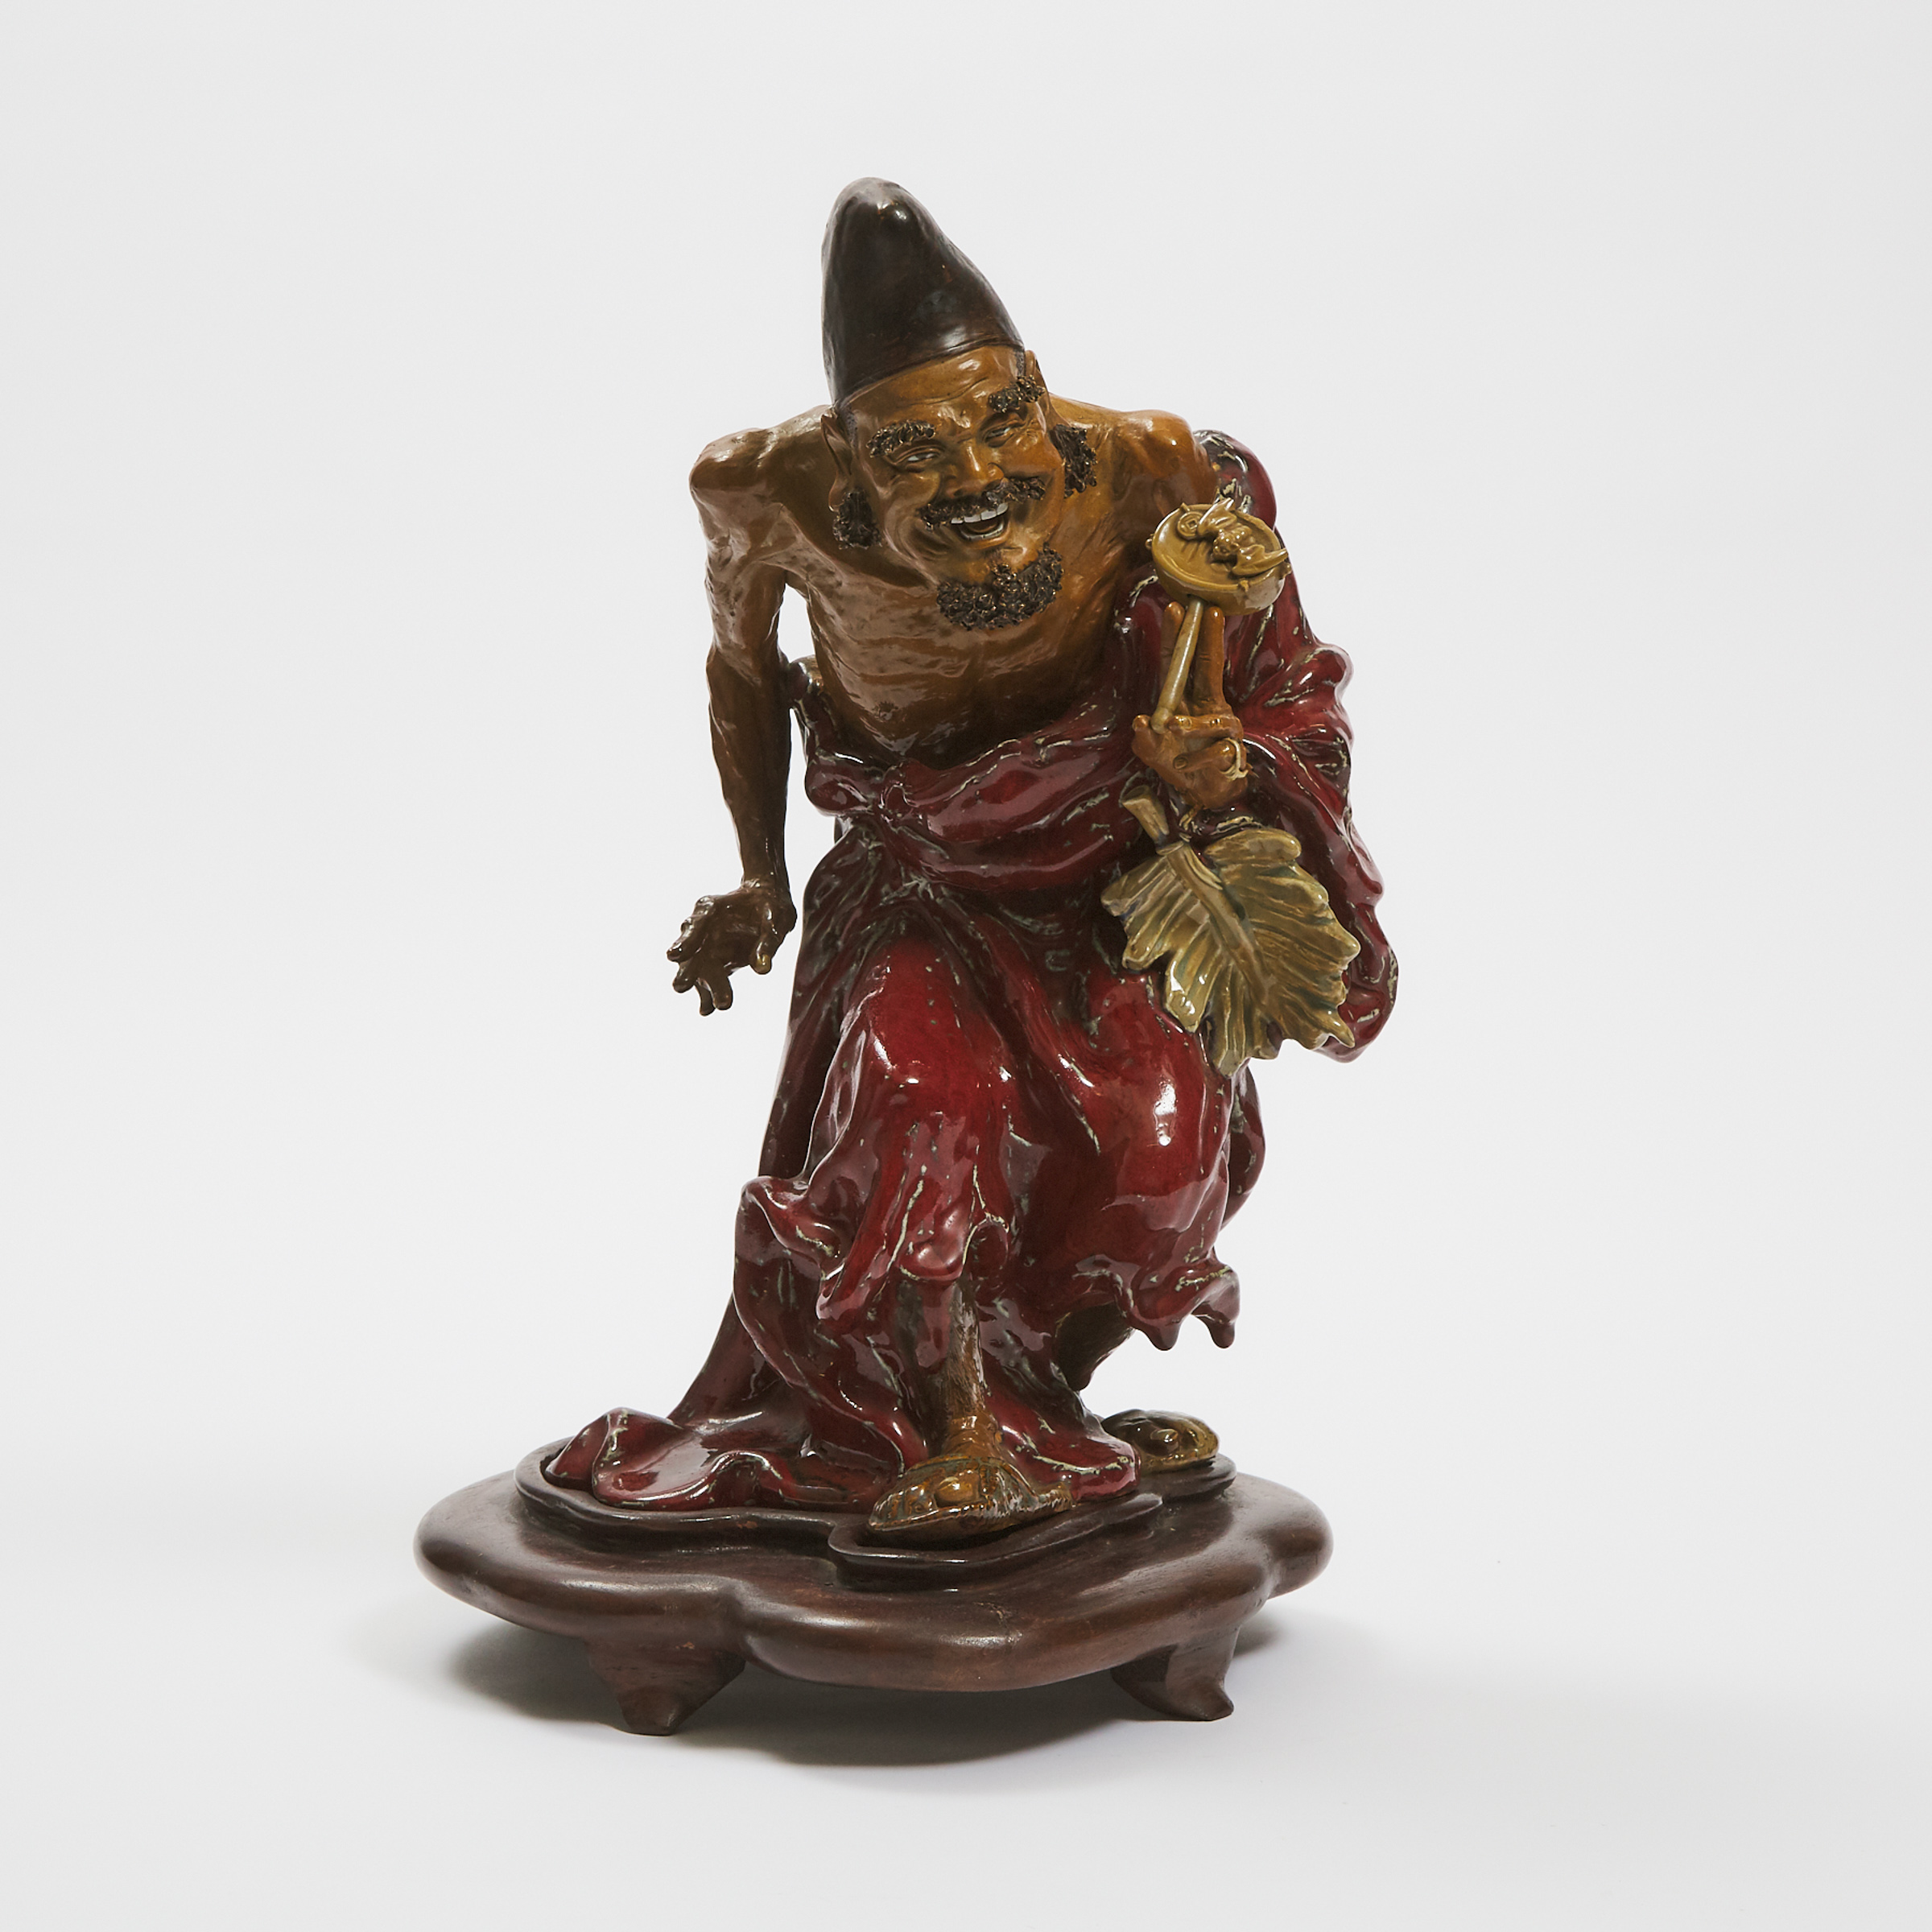 A Shiwan Figure of Ji Gong Liao 3ac471